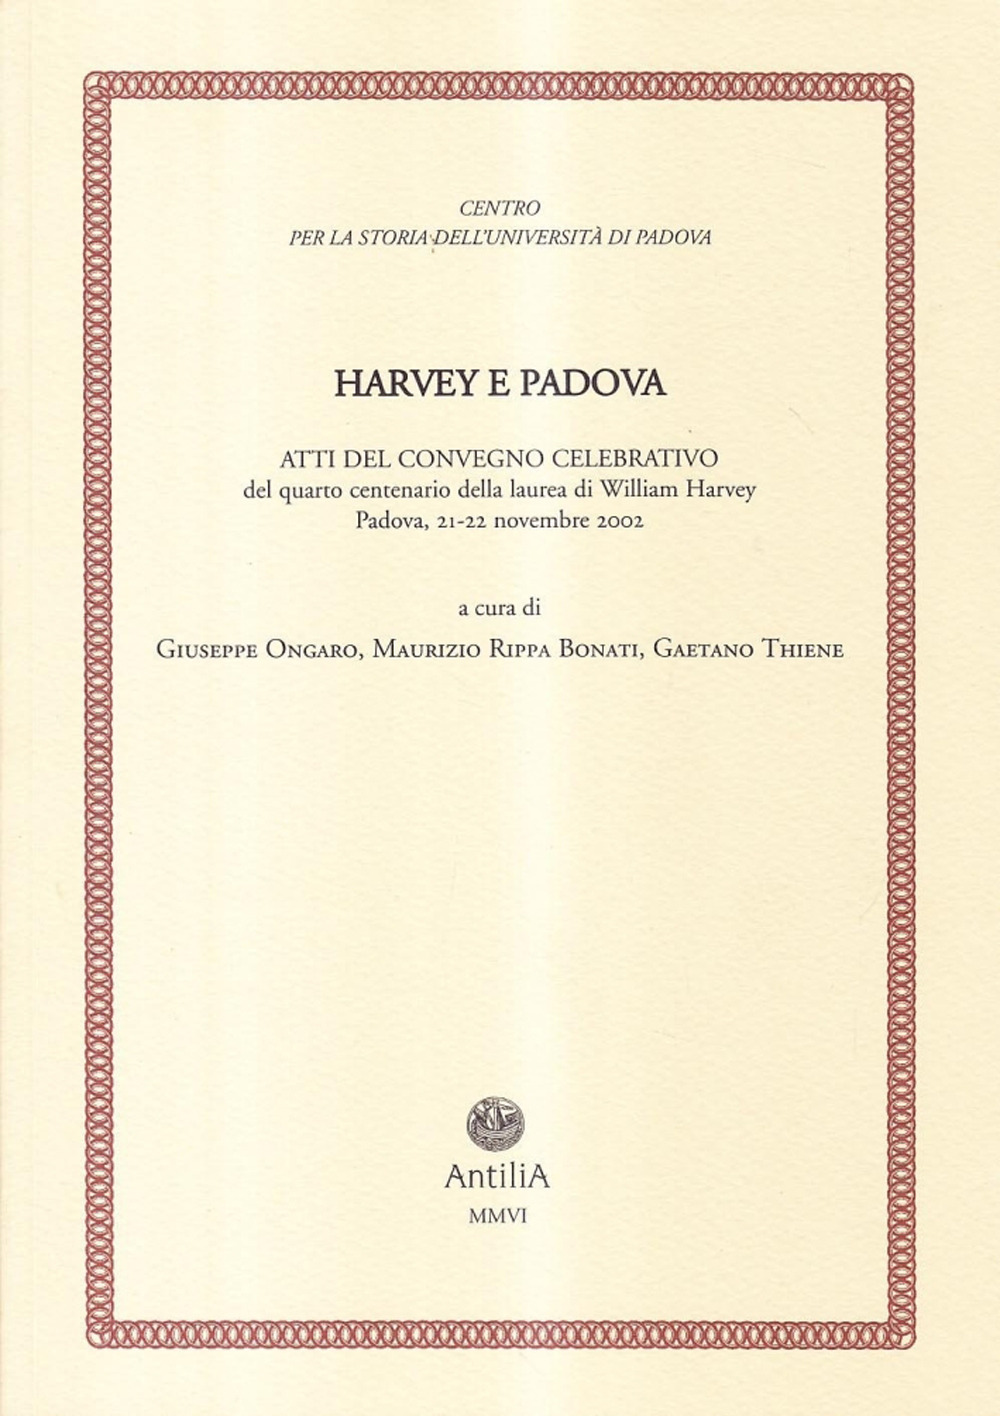 Harvey e Padova. Atti del Convegno celebrativo del 4° centenario della laurea di William Harvey (Padova, 21-22 novembre 2002)